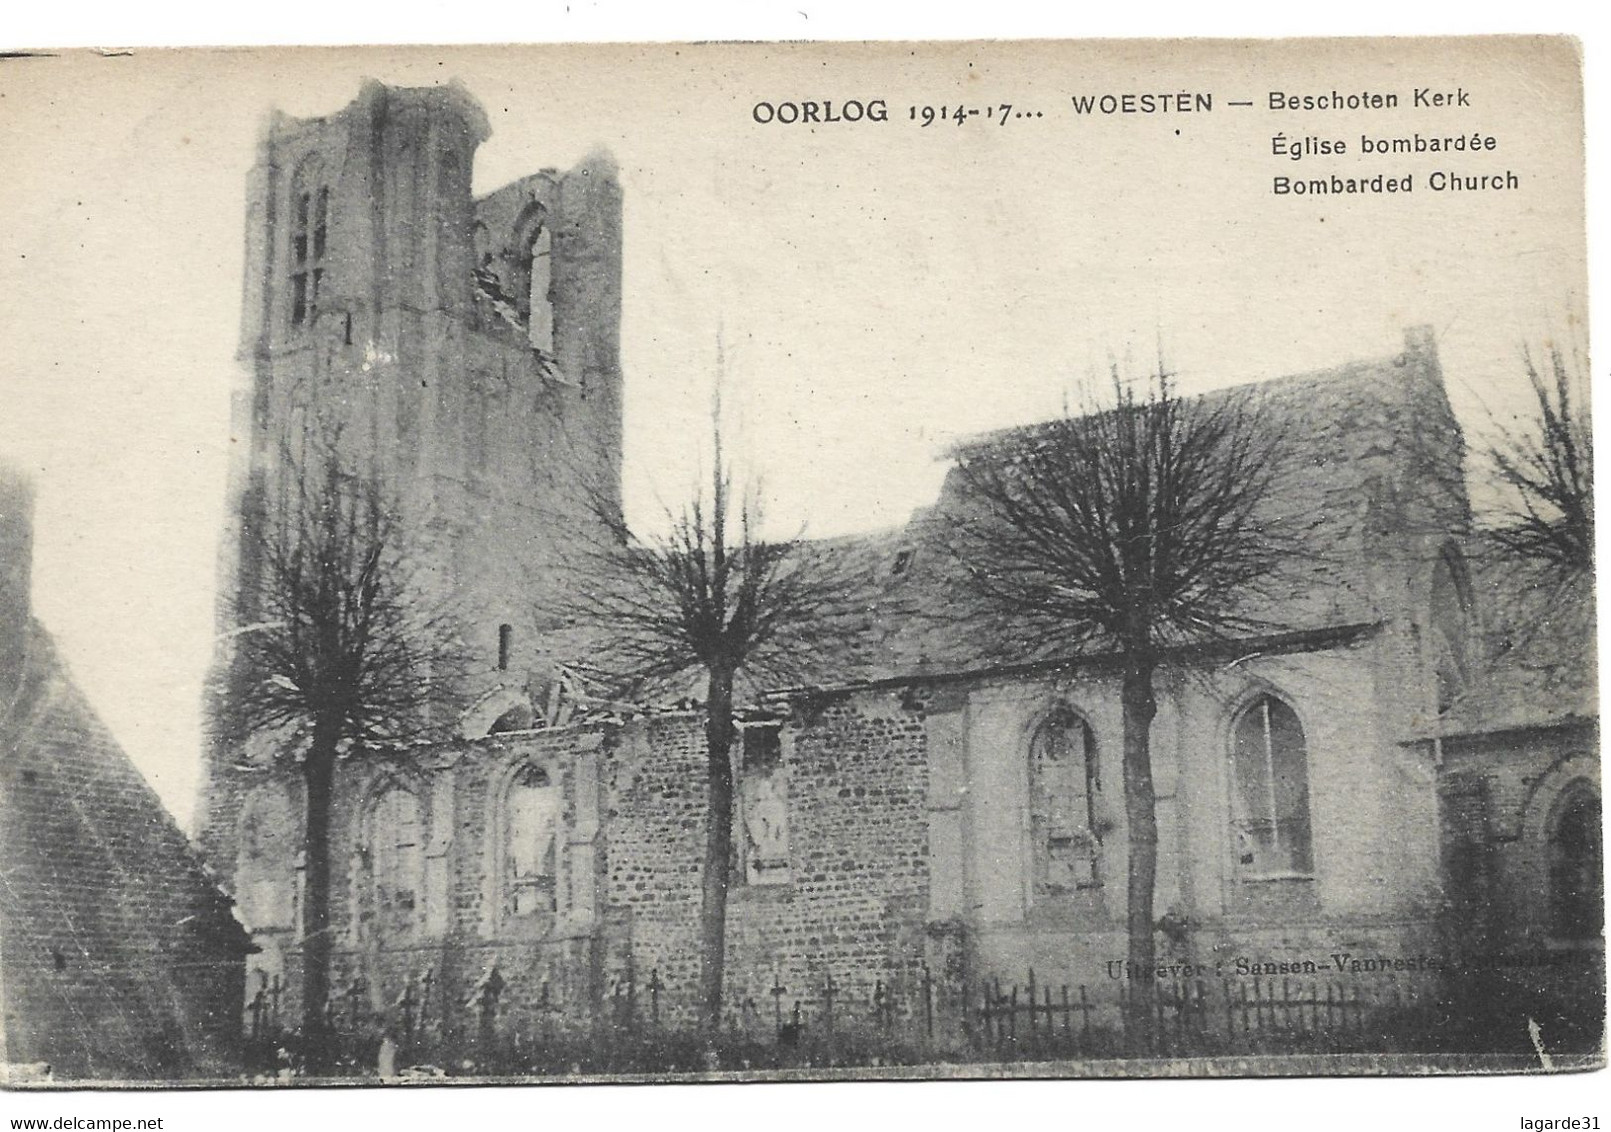 OORLOG 1914-17, Bombarded Church, Woesten, Vieteren, West Flanders, Belgium, - Vleteren